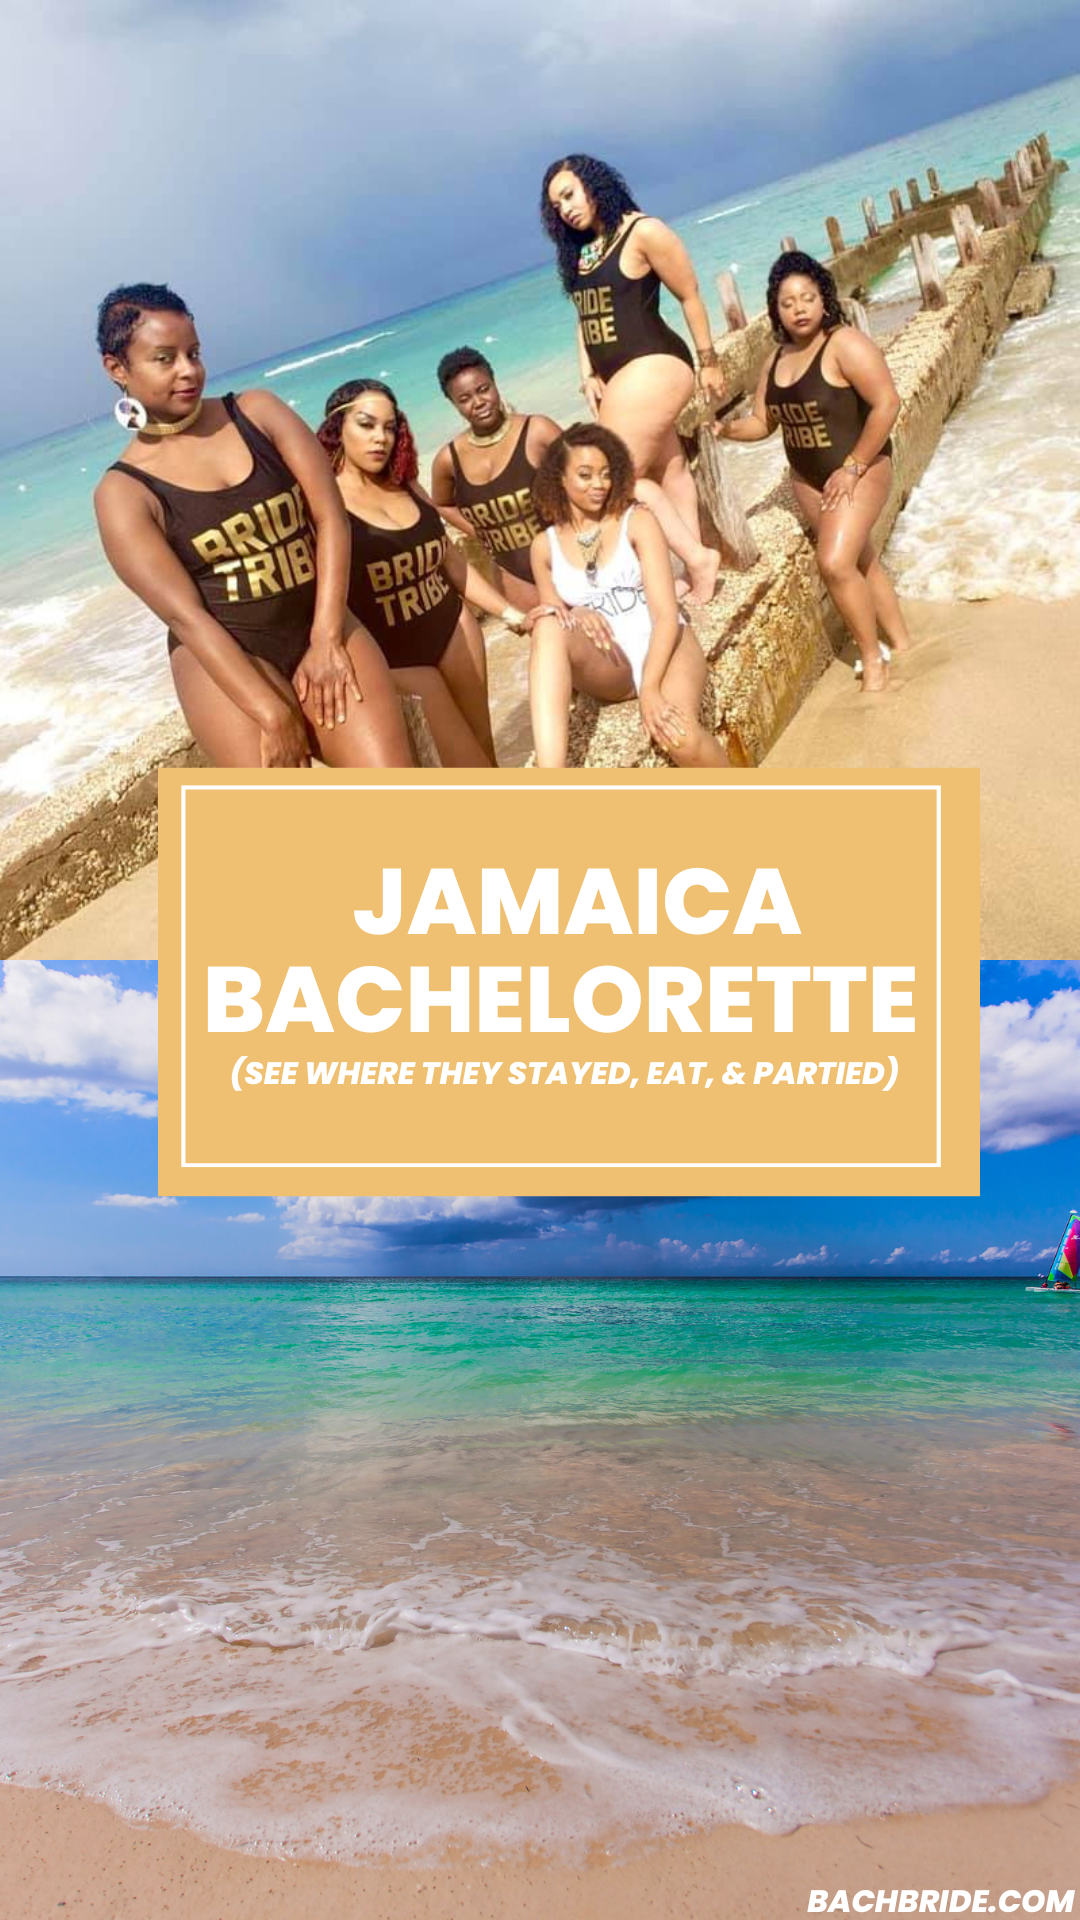 Jamaica bachelorette party